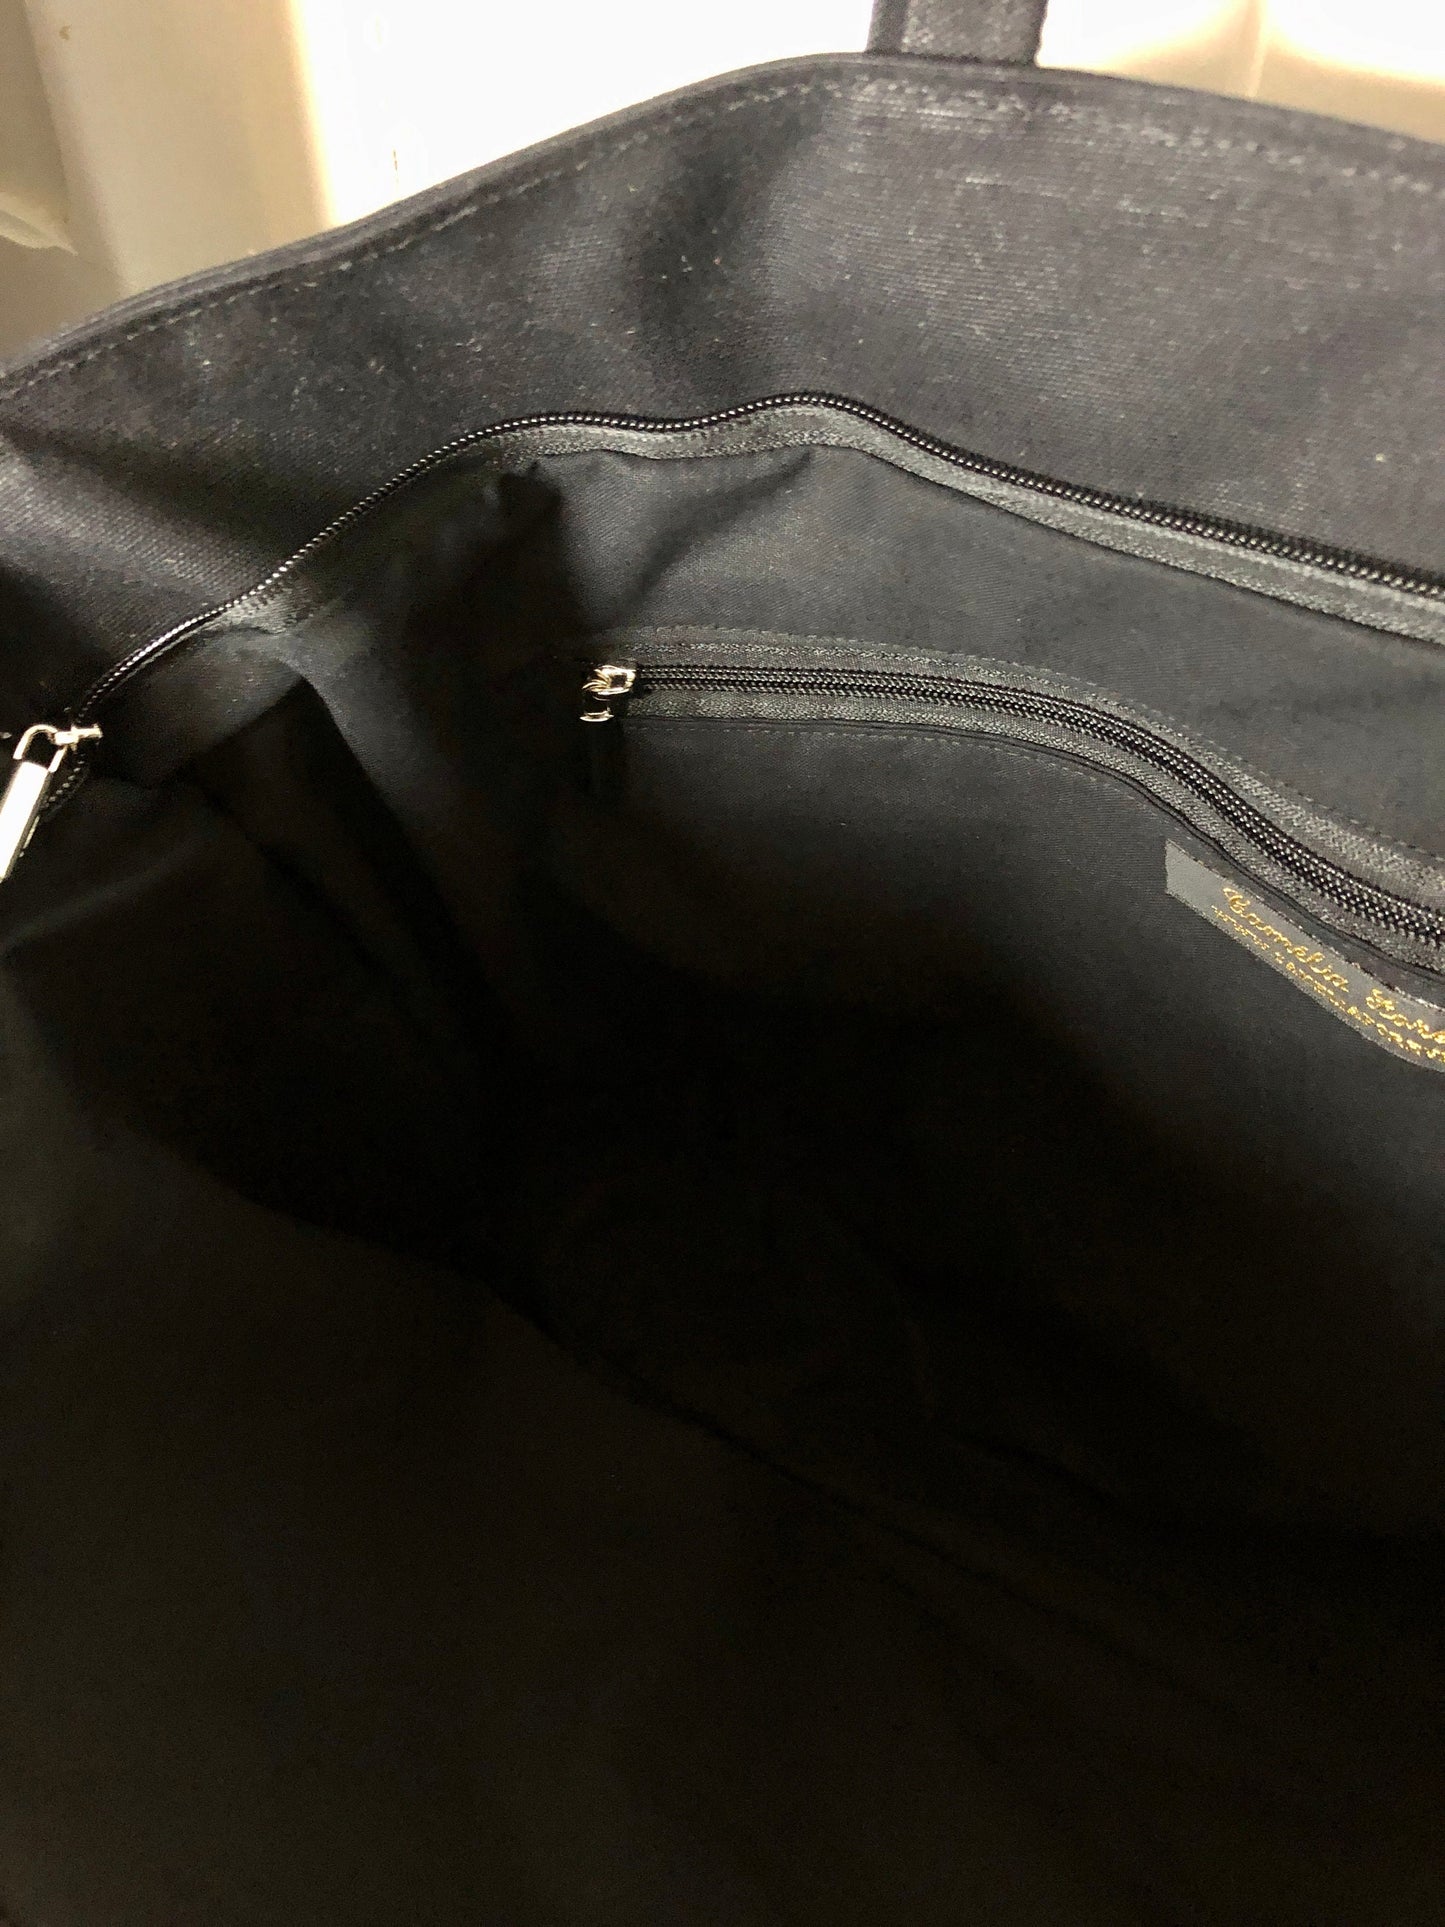 Sac cabas noir paillettes - sac en toile de coton noir surmonté de paillettes - fourre toute noir